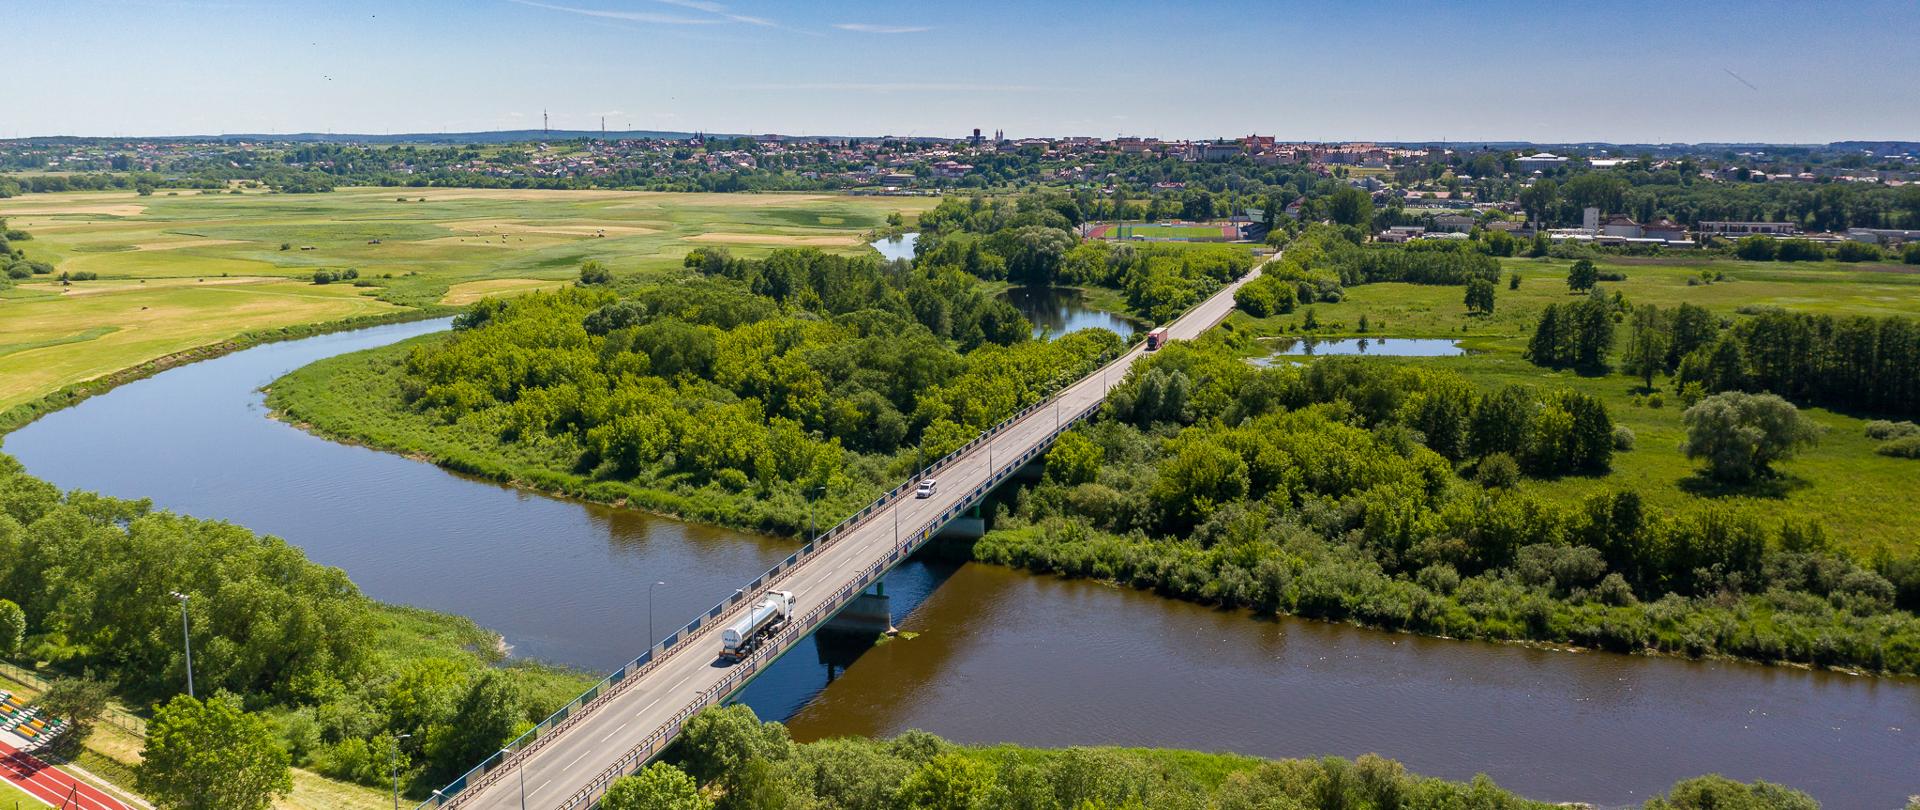 Obecna DK61 i most na Narwi w Łomży - widok z powietrza